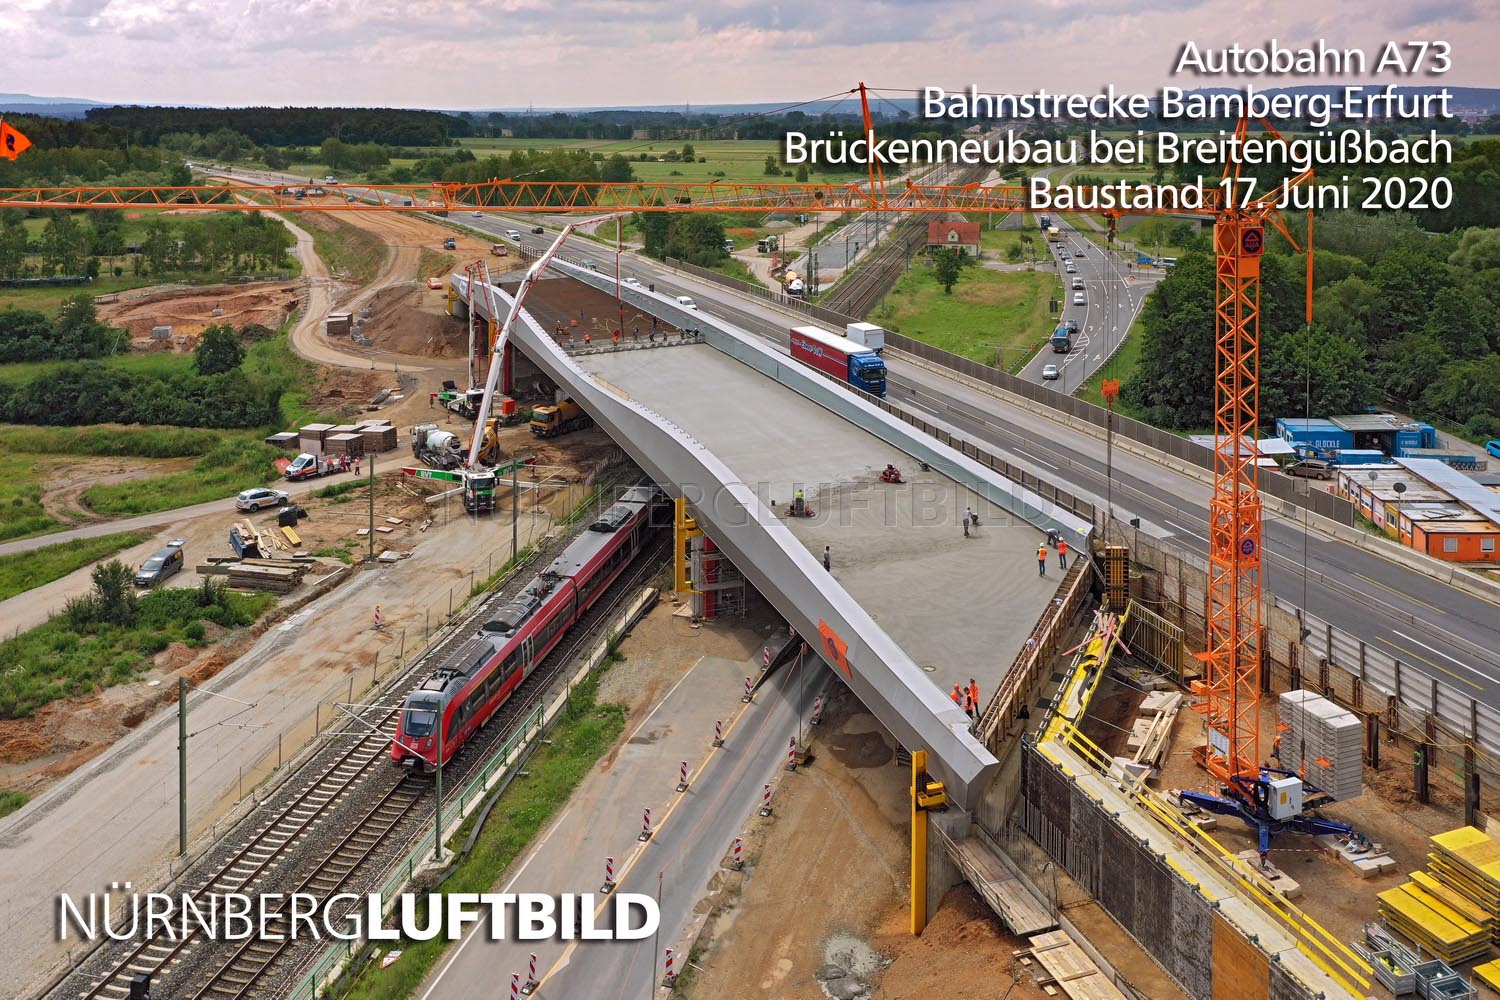 Autobahn A73, Bahnstrecke Bamberg-Erfurt, Brückenneubau bei Breitengüßbach, Baustand 17. Juni 2020